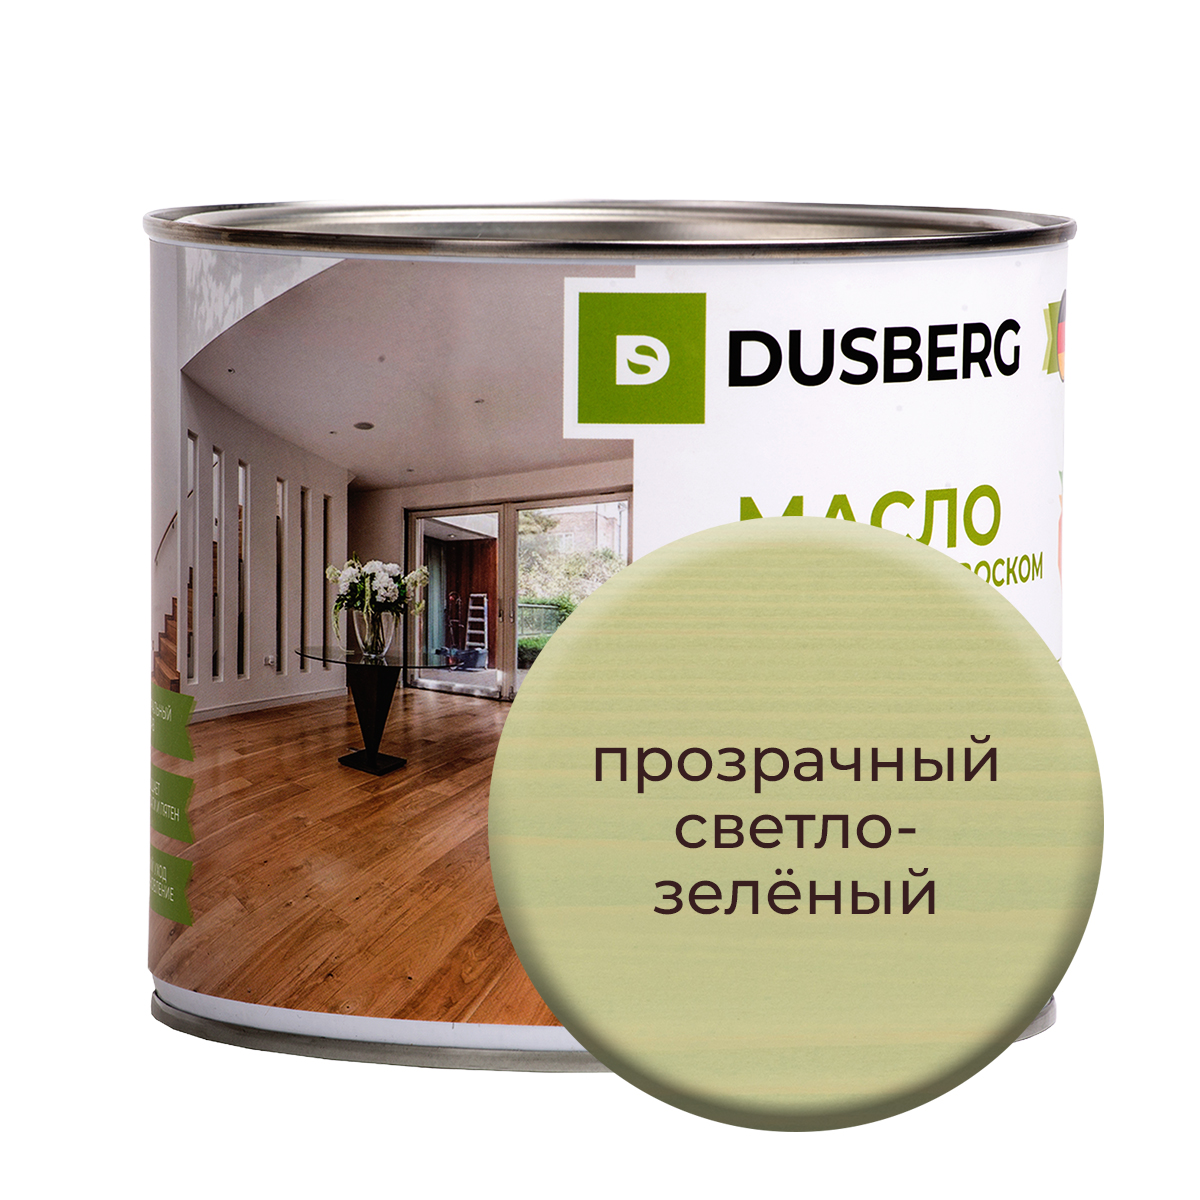 Масло Dusberg для стен на бесцветной основе, 750 мл Прозрачный светло-зеленый масло dusberg для стен на бесцветной основе 750 мл банан